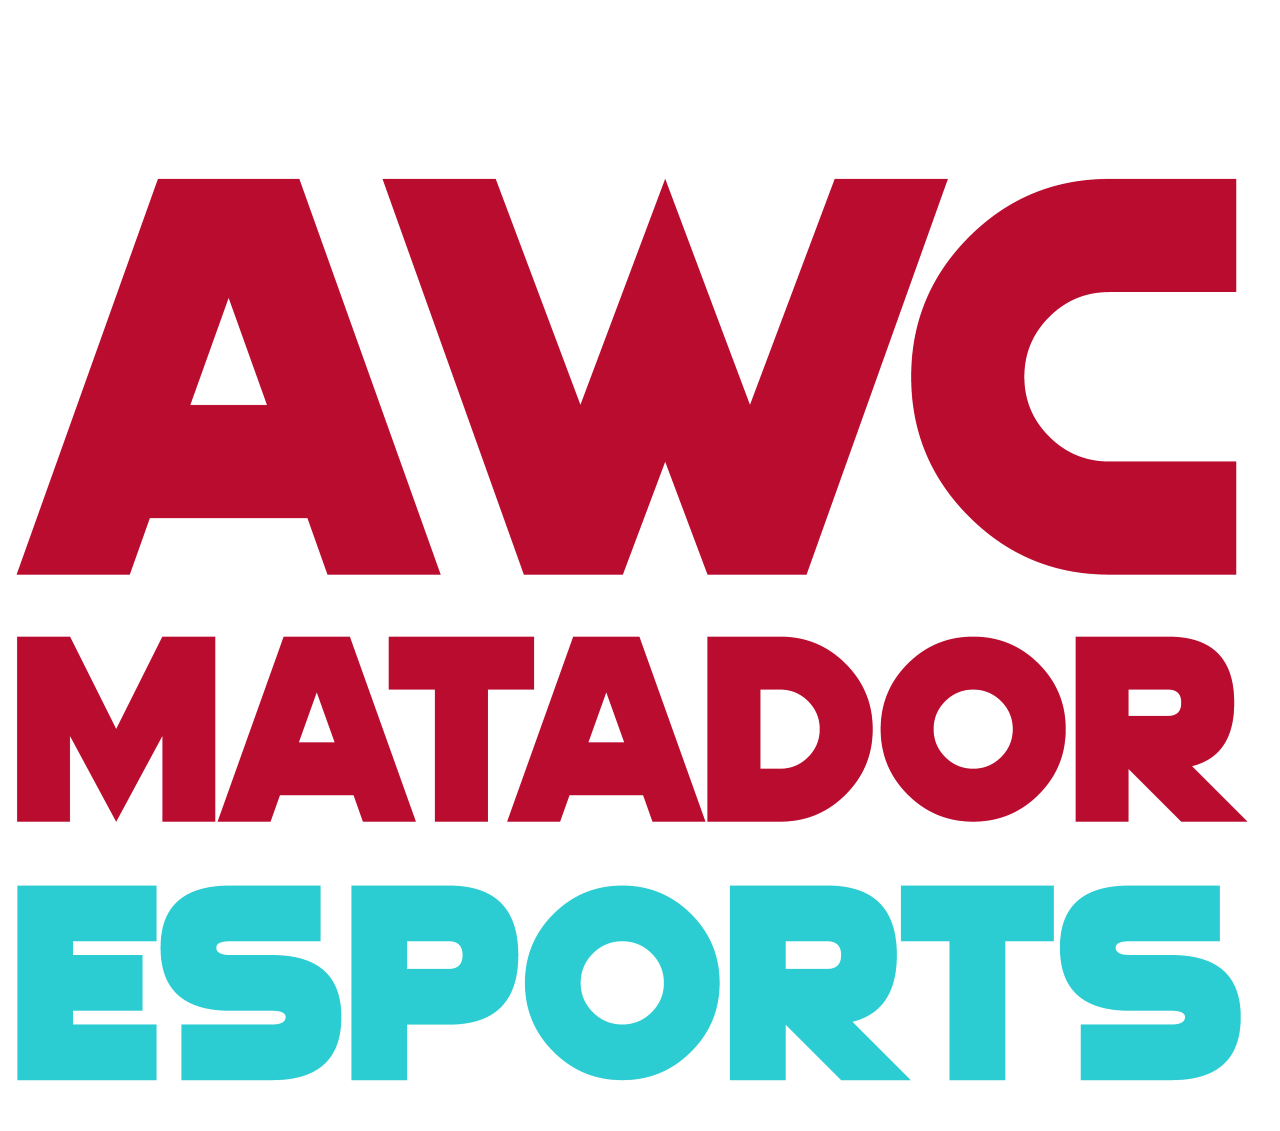 AWC Matador Esports Logo